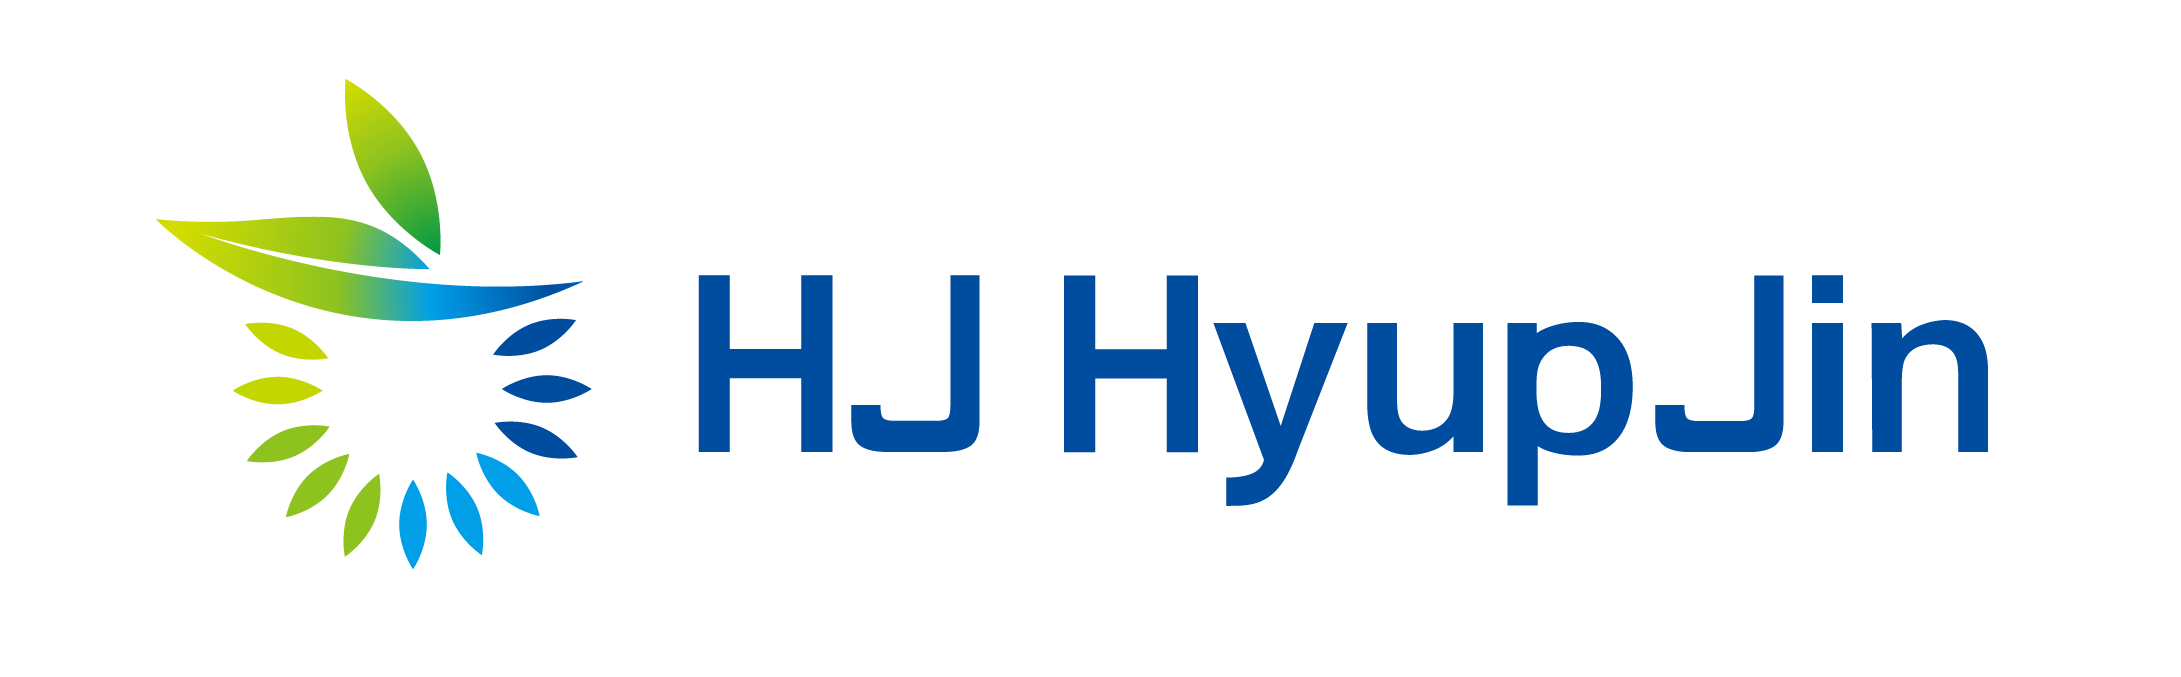 hj hyupjin_logo